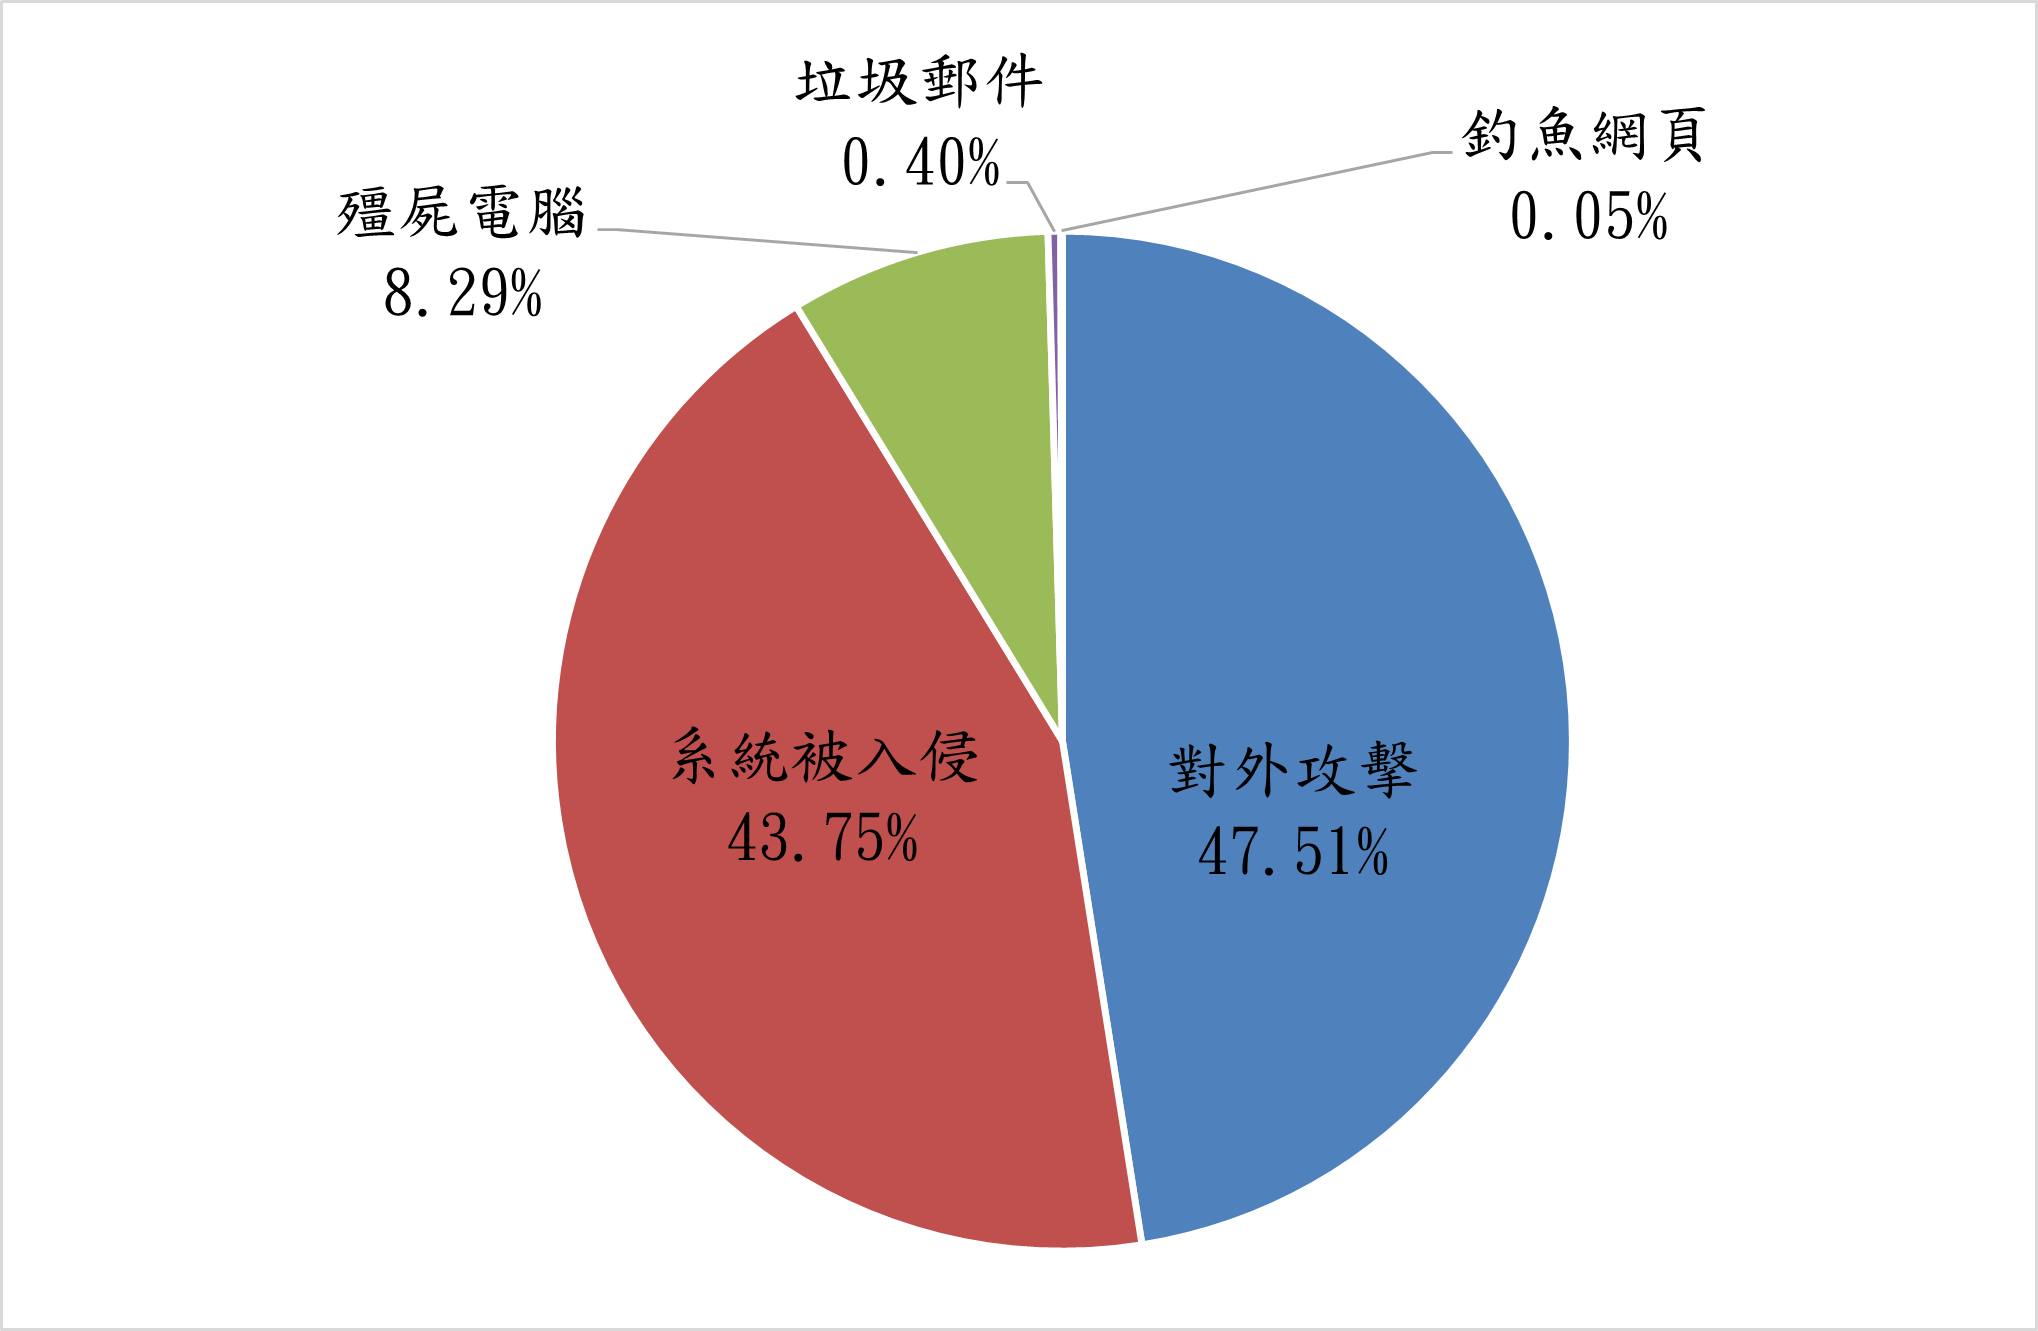 殭屍電腦8.29% 垃圾郵件0.4% 釣魚網頁0.05% 對外攻擊47.51% 系統被入侵43.75%